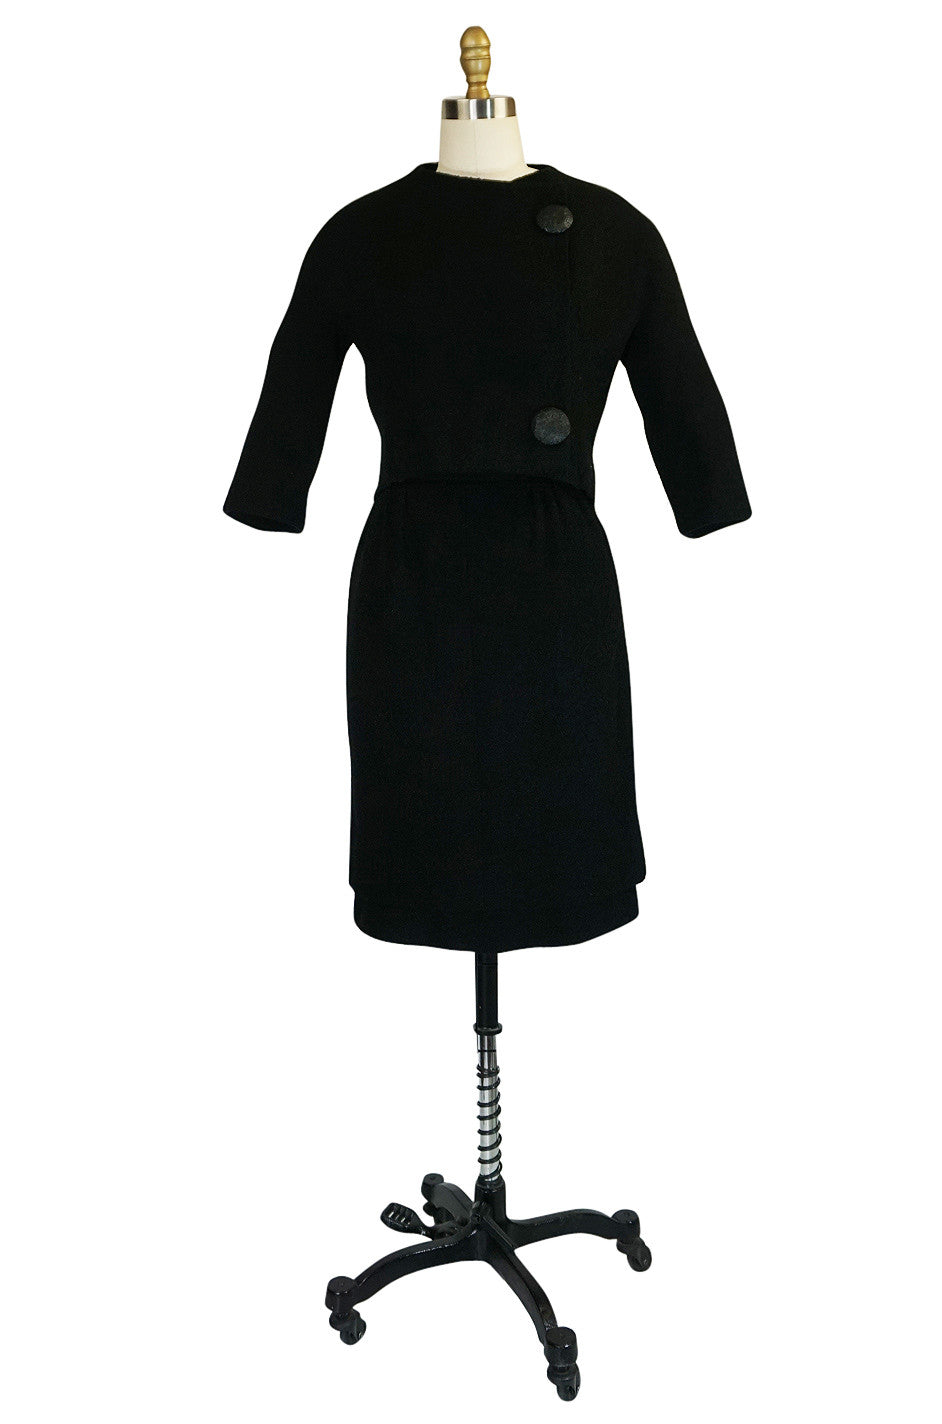 efterligne lunken Suradam c1957 Black Cristobal Balenciaga Haute Couture Suit – Shrimpton Couture